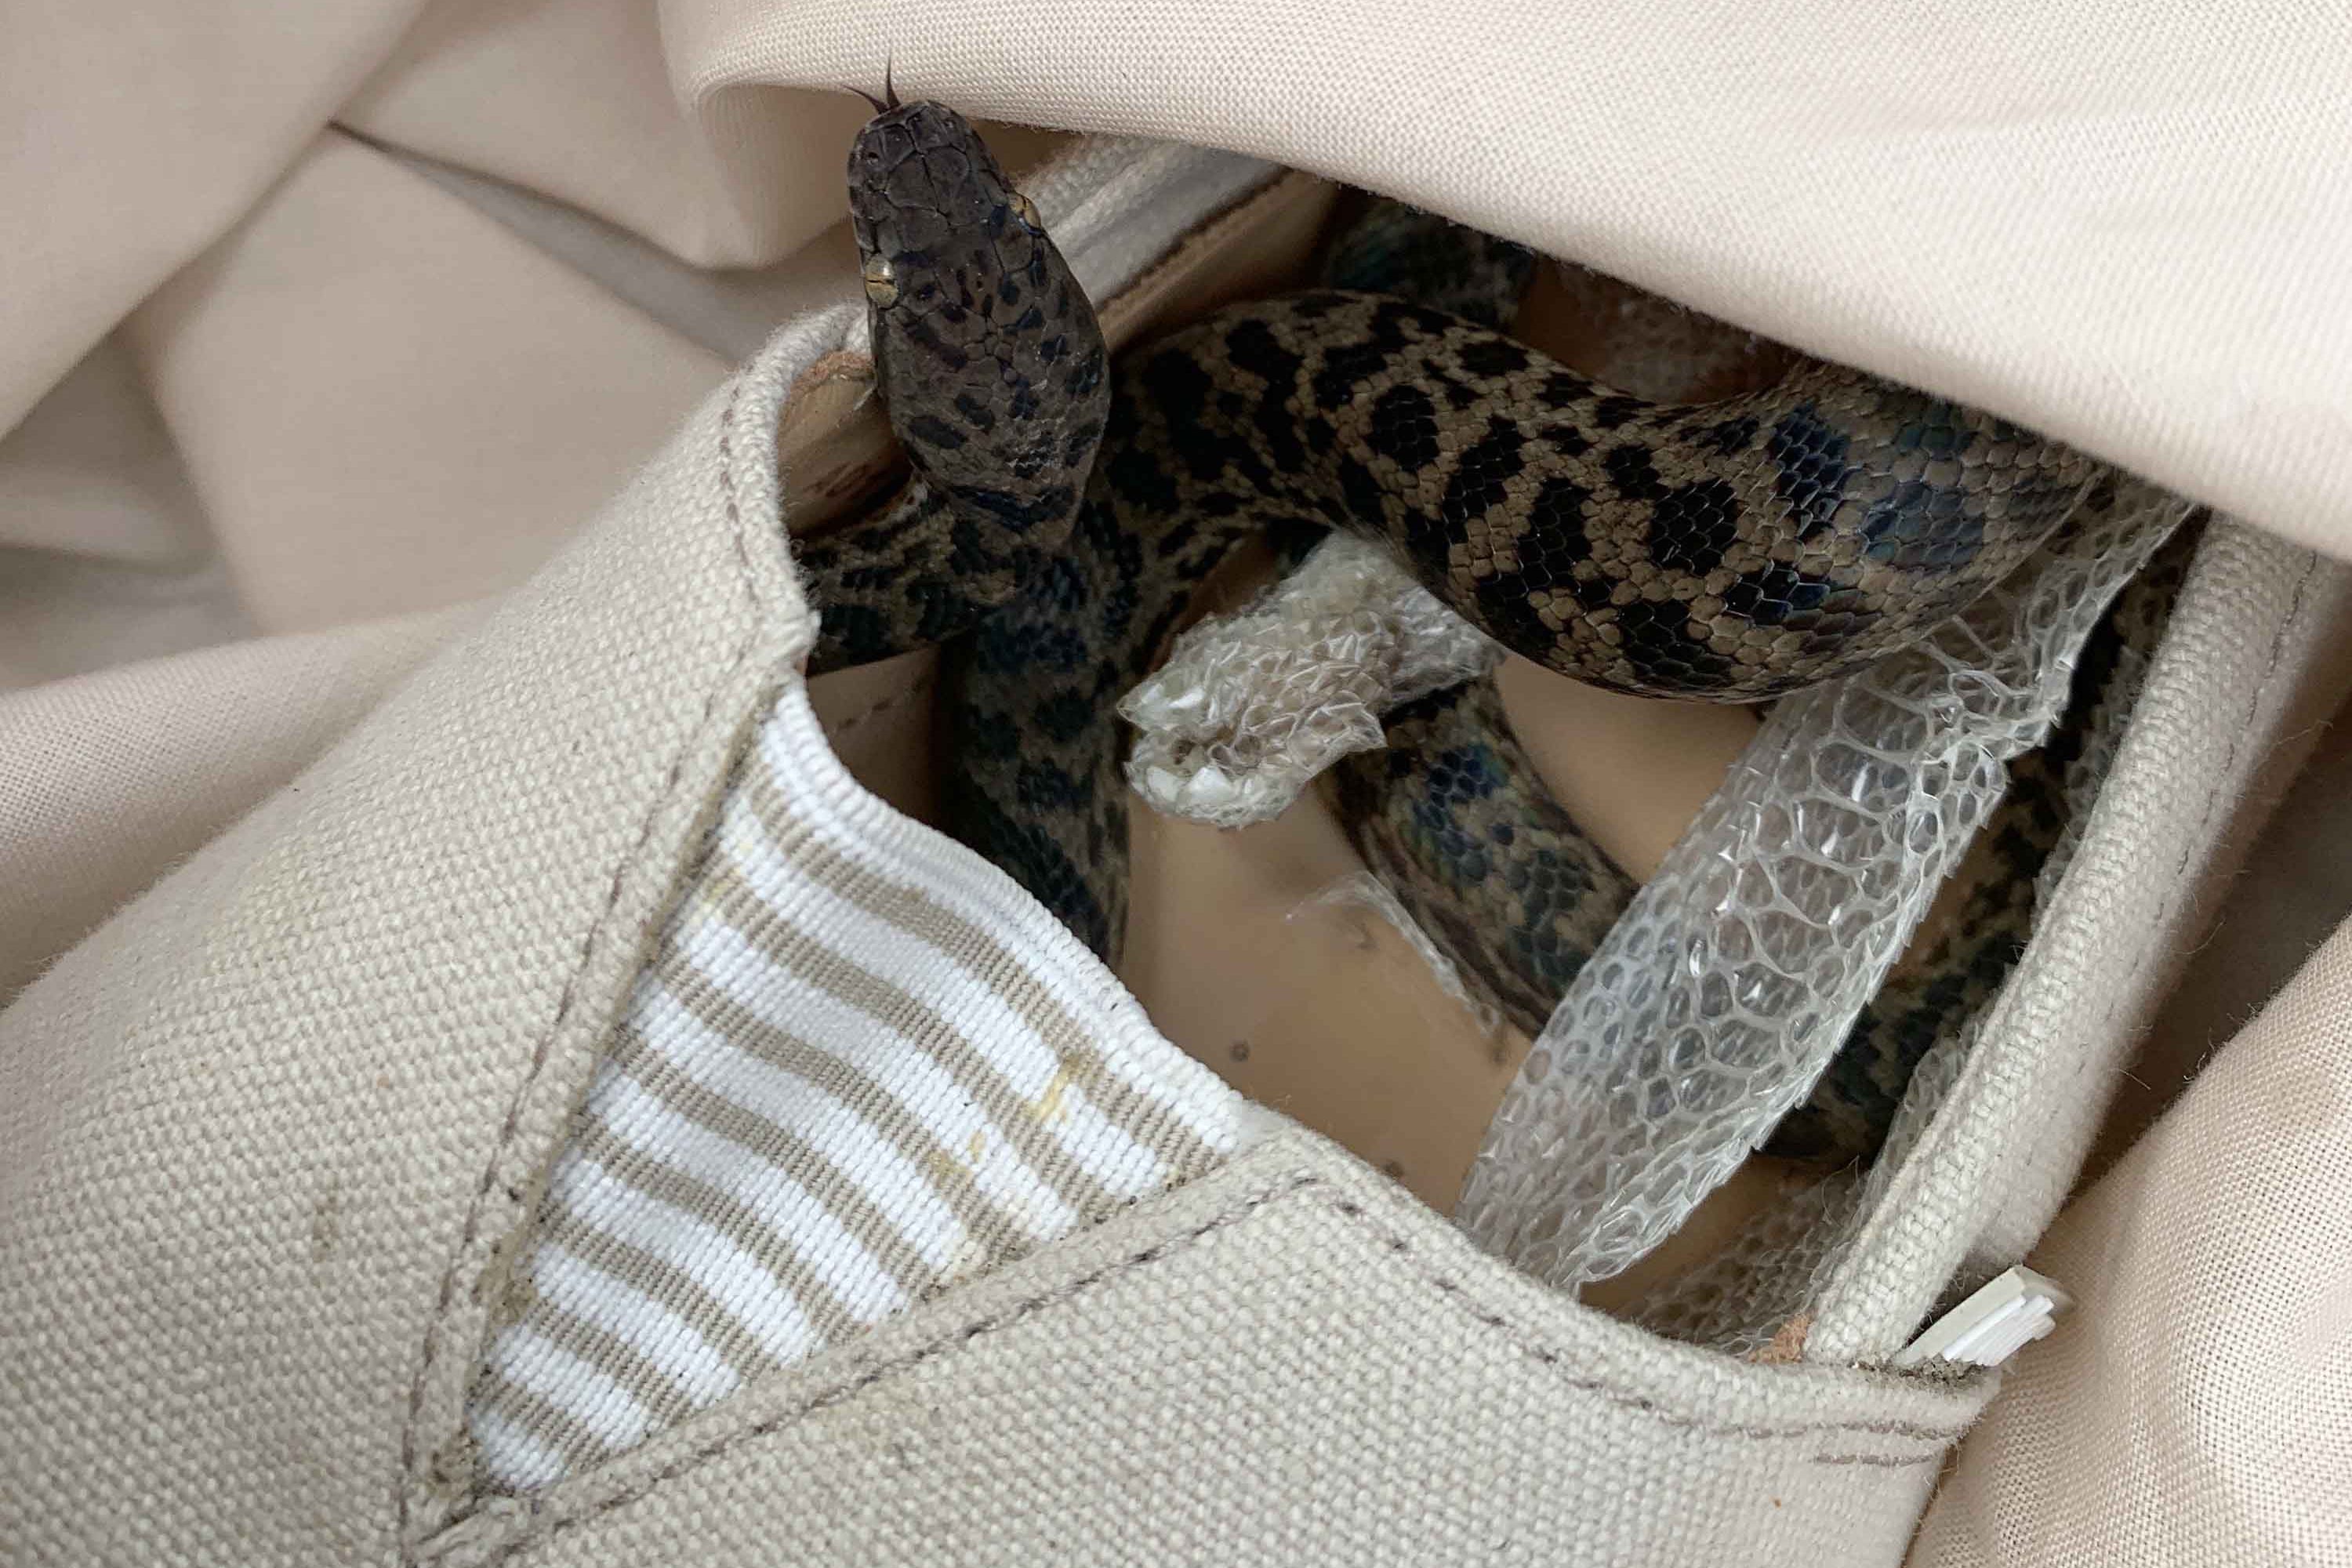 La serpiente estaba en un zapato en la maleta de Moira Boxall. Cortesía: SPCA Escocia